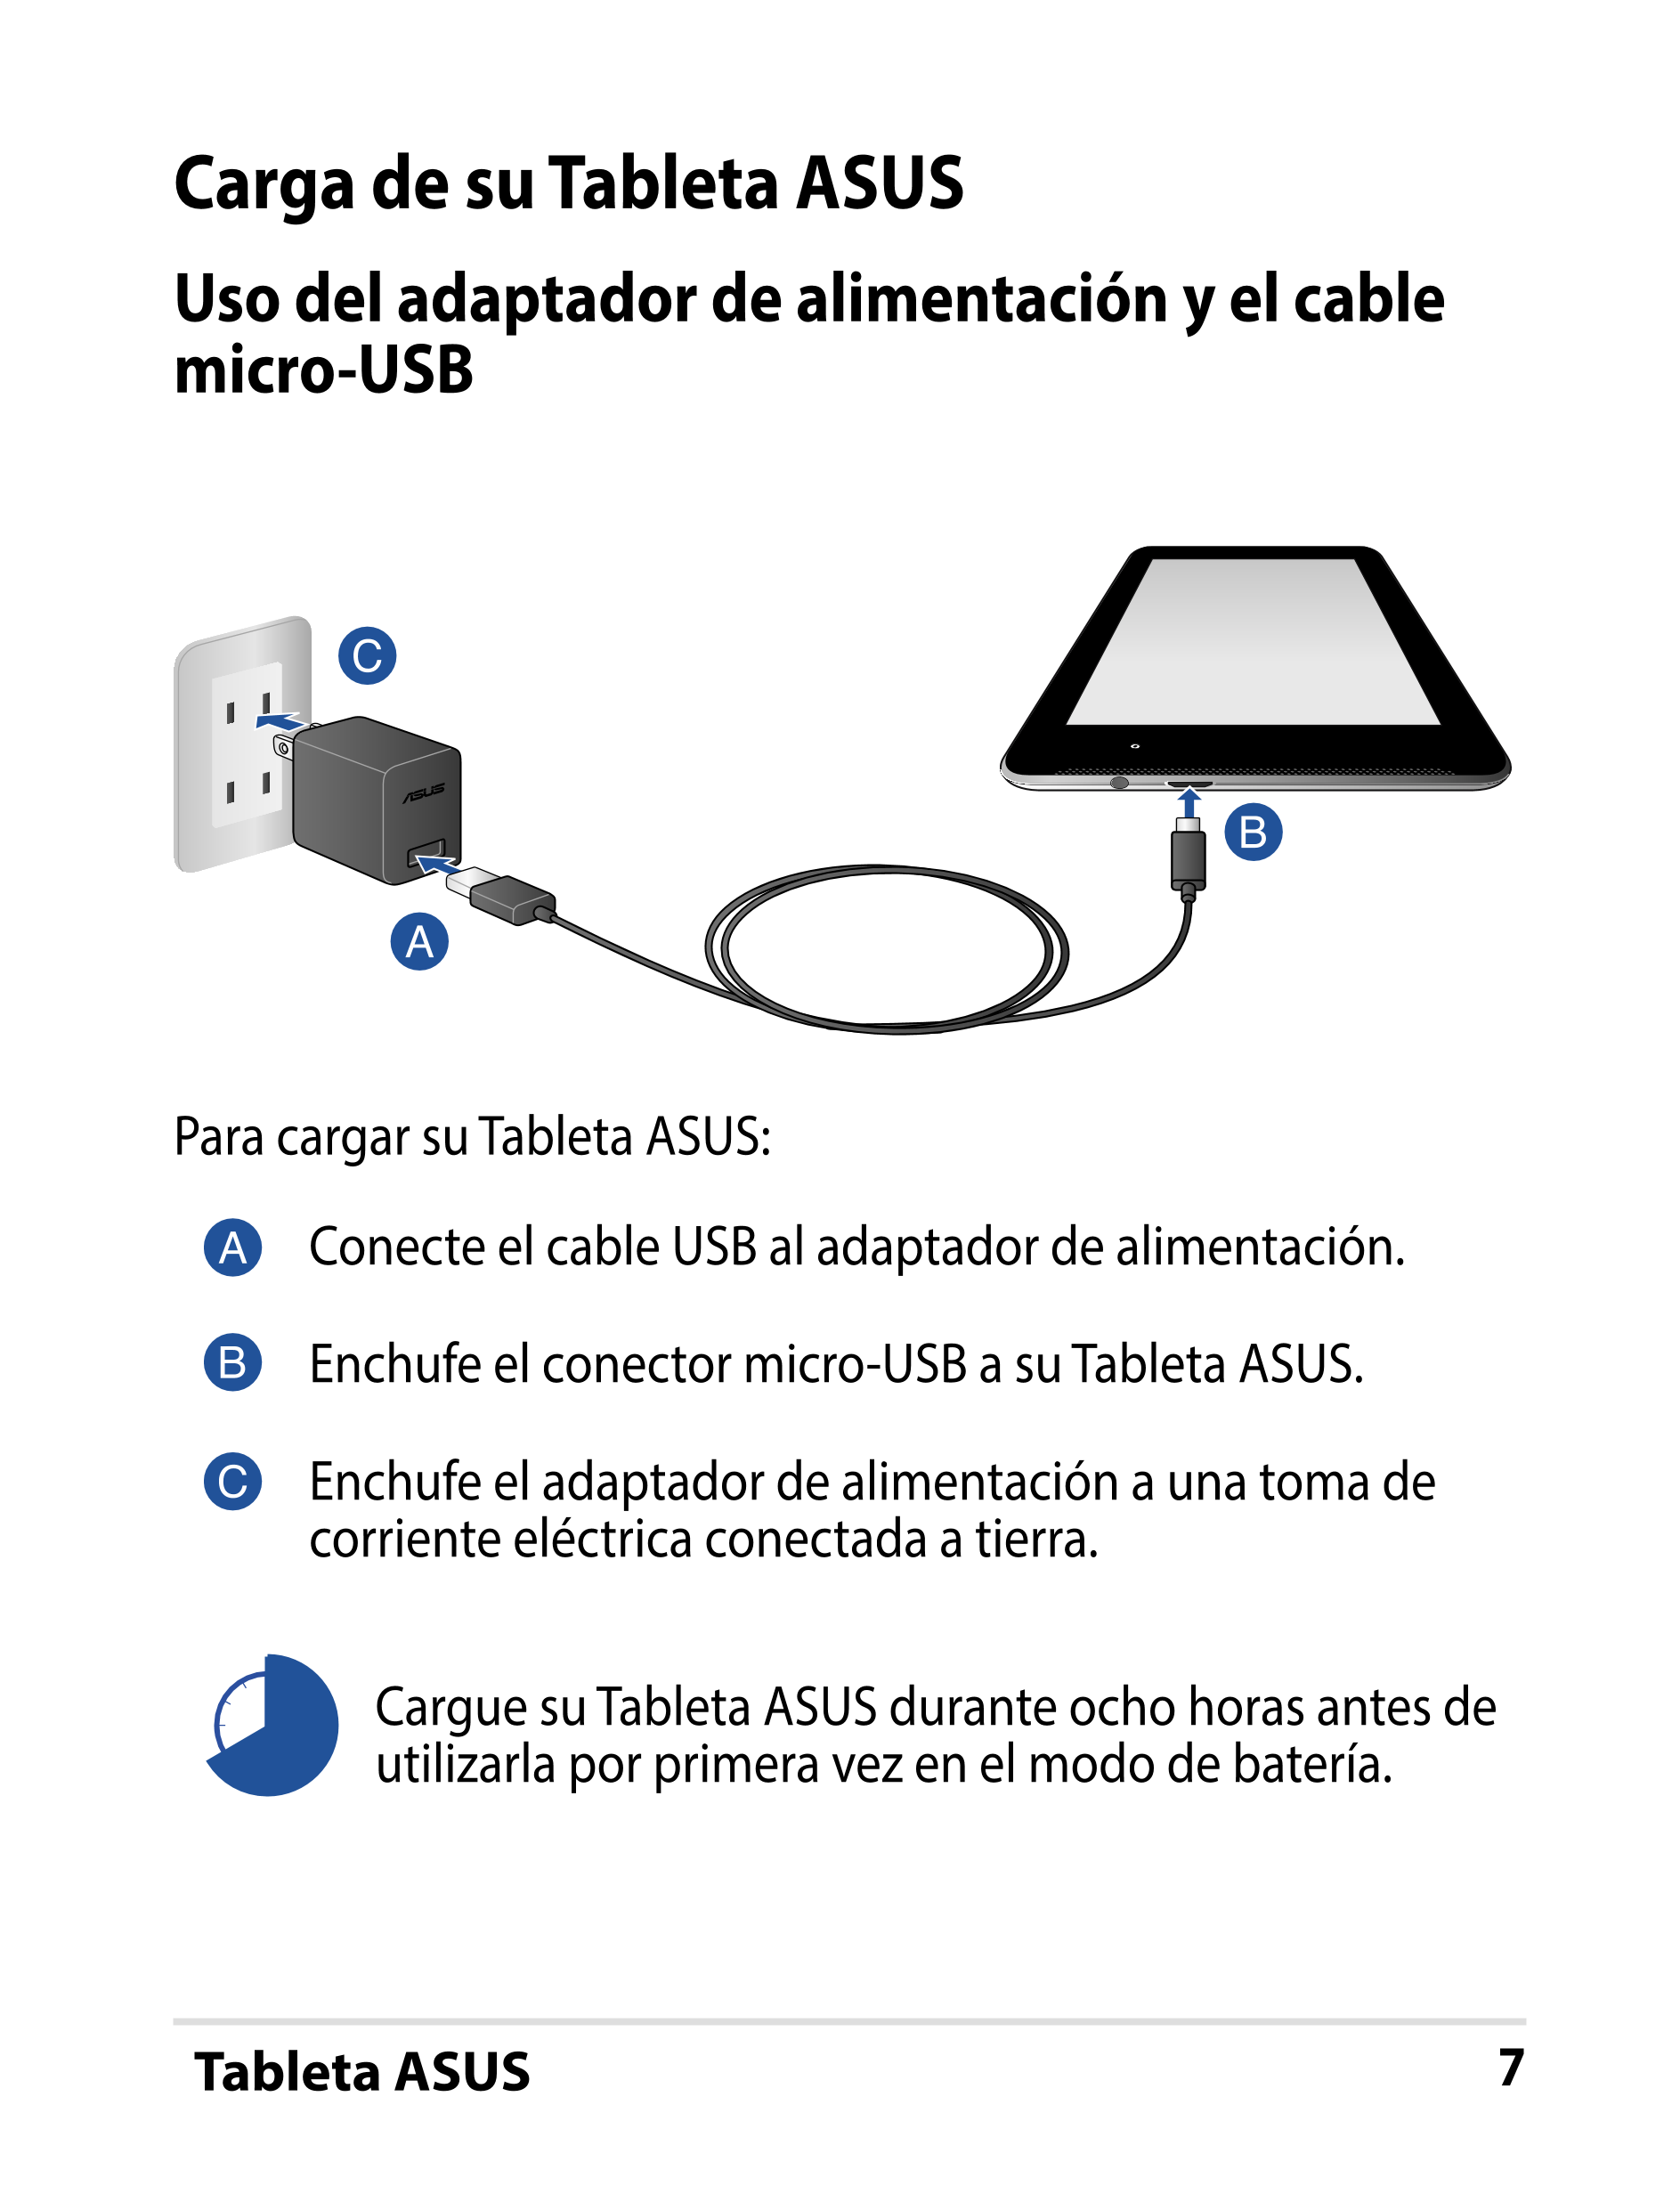 Carga de su Tableta ASUS
Uso del adaptador de alimentación y el cable 
micro-USB
Para cargar su Tableta ASUS:
Conecte el cable U